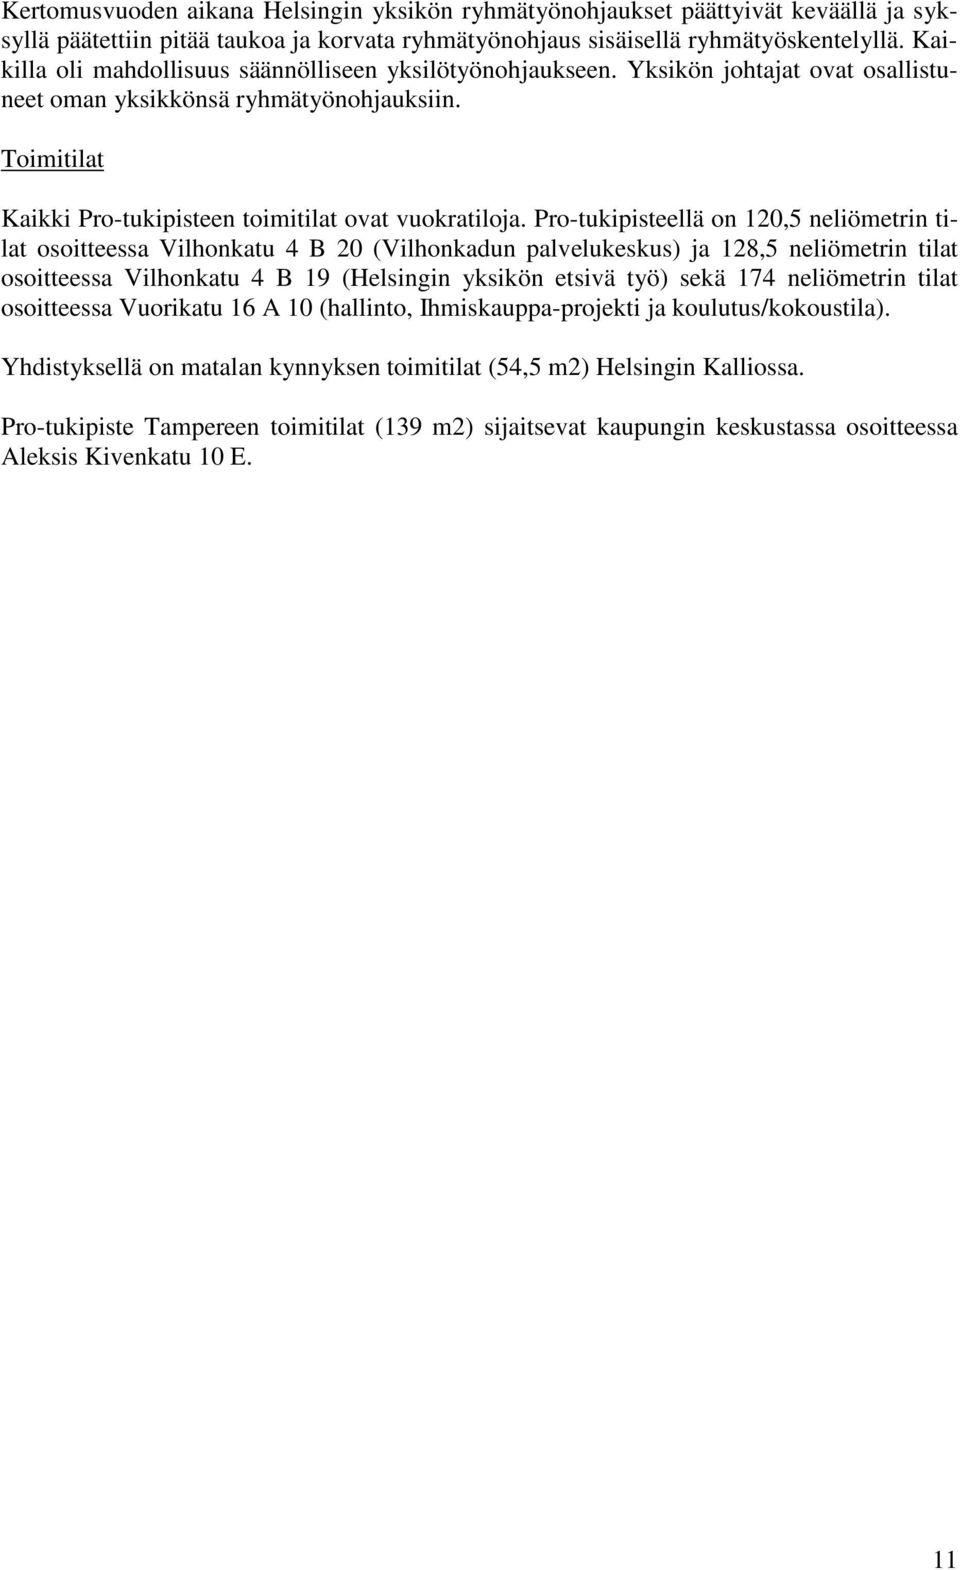 Pro-tukipisteellä on 120,5 neliömetrin tilat osoitteessa Vilhonkatu 4 B 20 (Vilhonkadun palvelukeskus) ja 128,5 neliömetrin tilat osoitteessa Vilhonkatu 4 B 19 (Helsingin yksikön etsivä työ) sekä 174